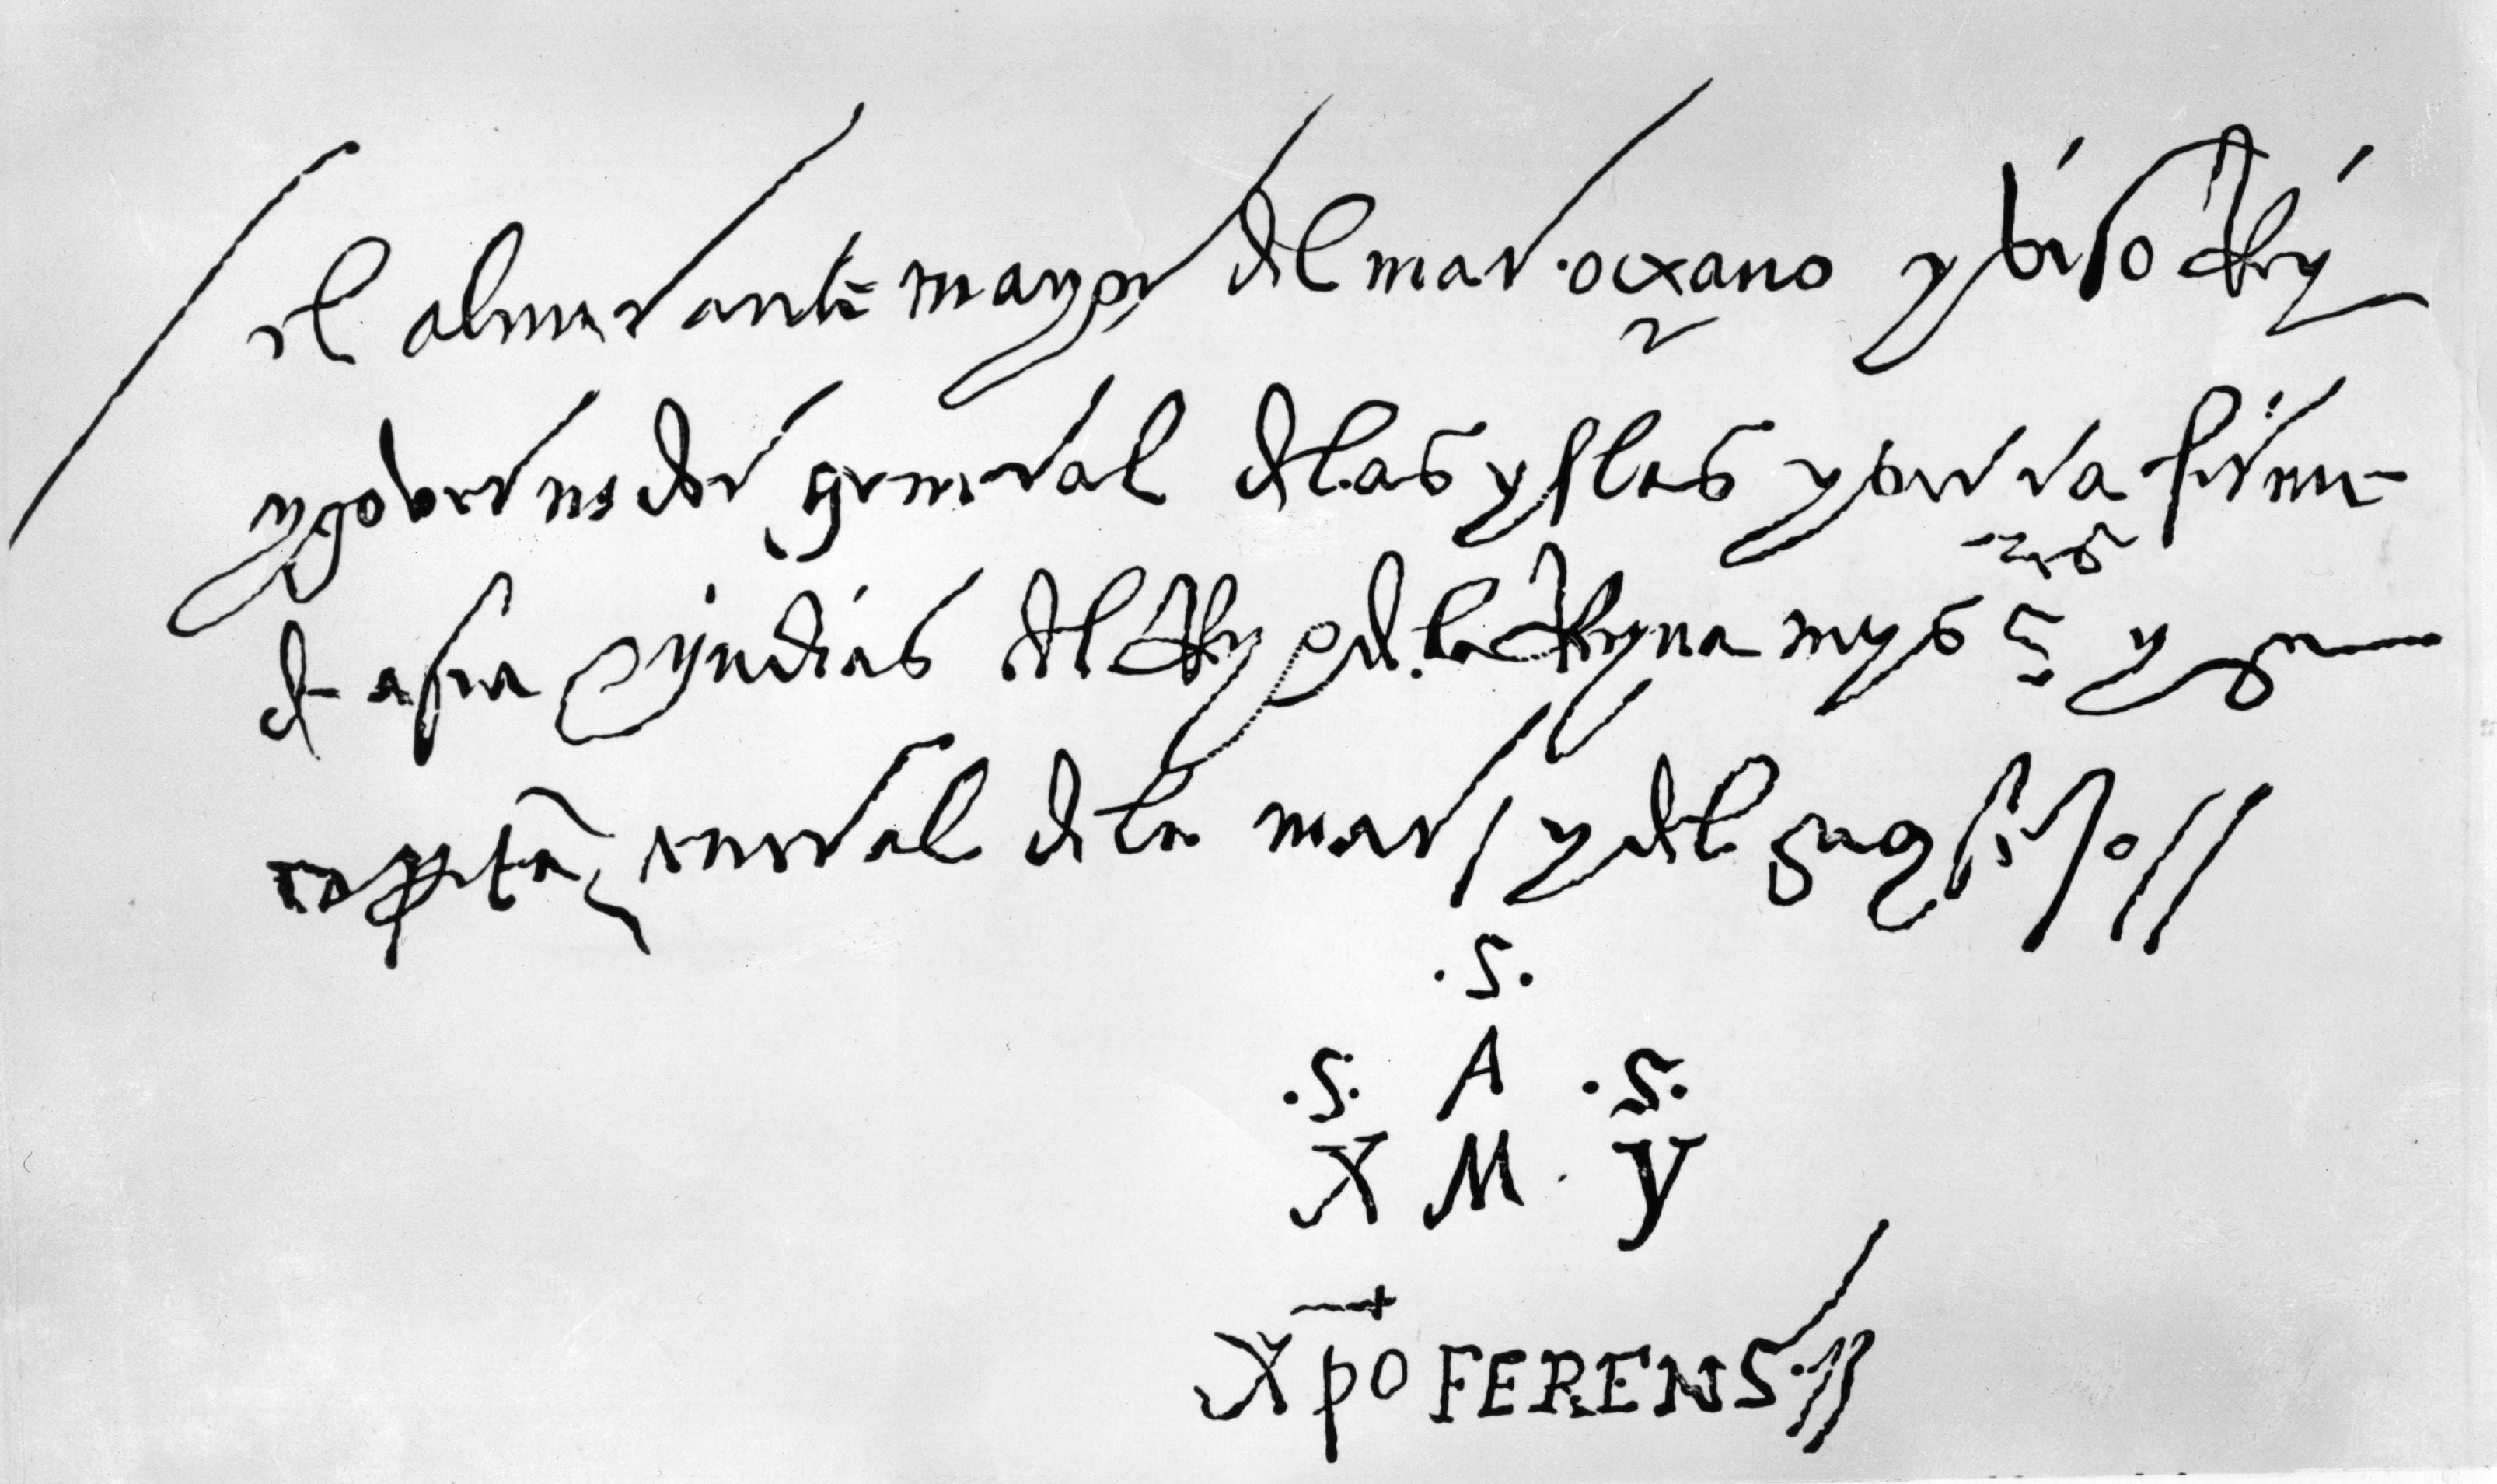 Lettera autografa di Cristoforo Colombo del 2 aprile 1502, indirizzata ai nobili signori dell'Ufficio di San Giorgio